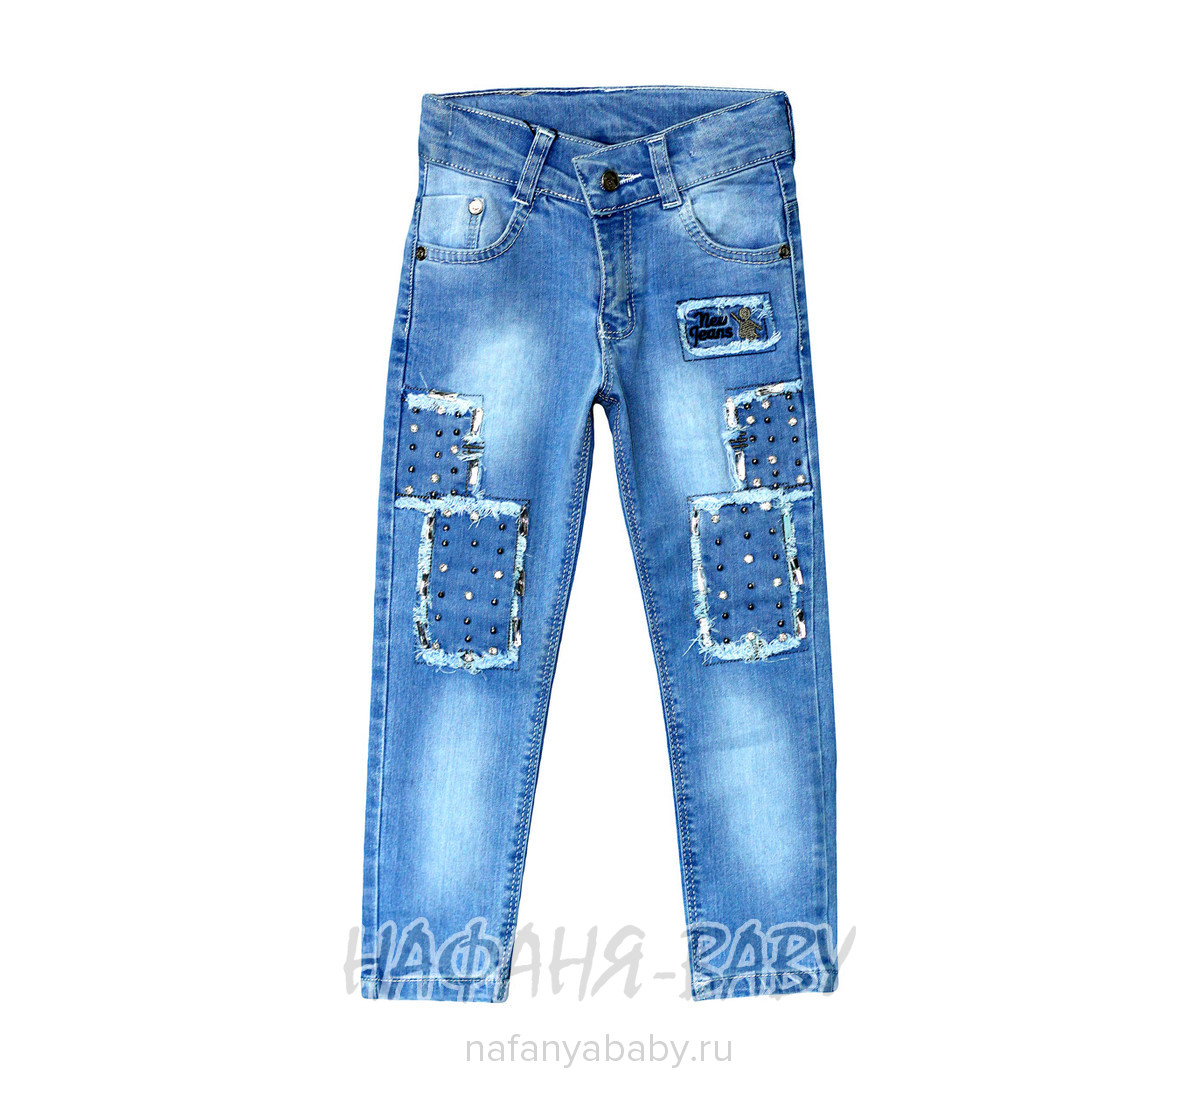 Детские джинсы J-ROYS арт: 2191-1, 1-4 года, цвет голубой, оптом Турция